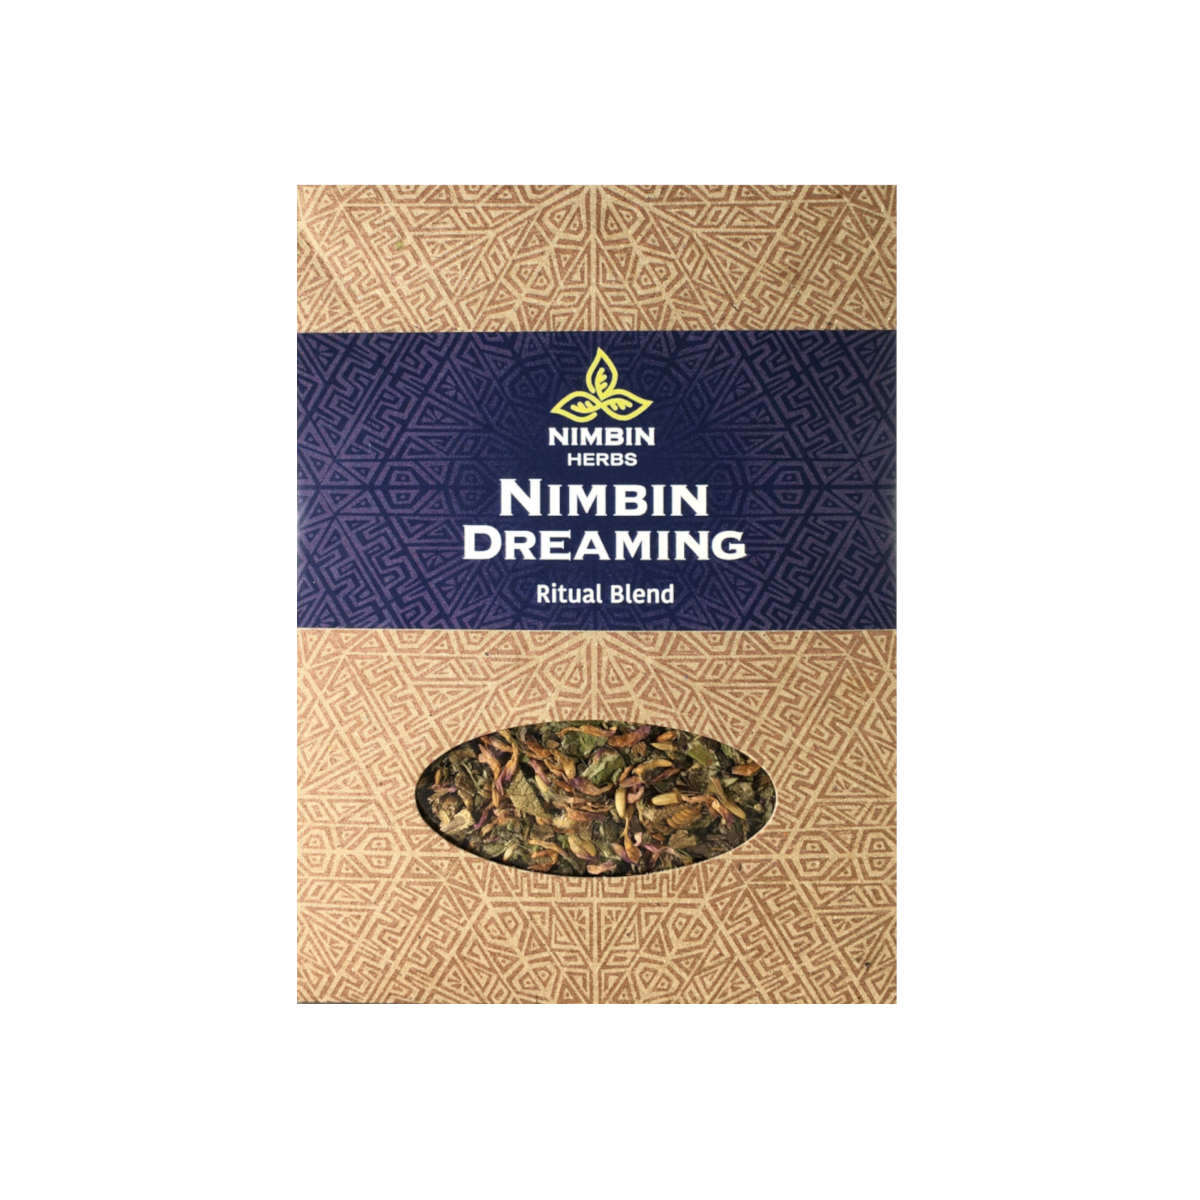 Nimbin-Dreaming-FINAL.png